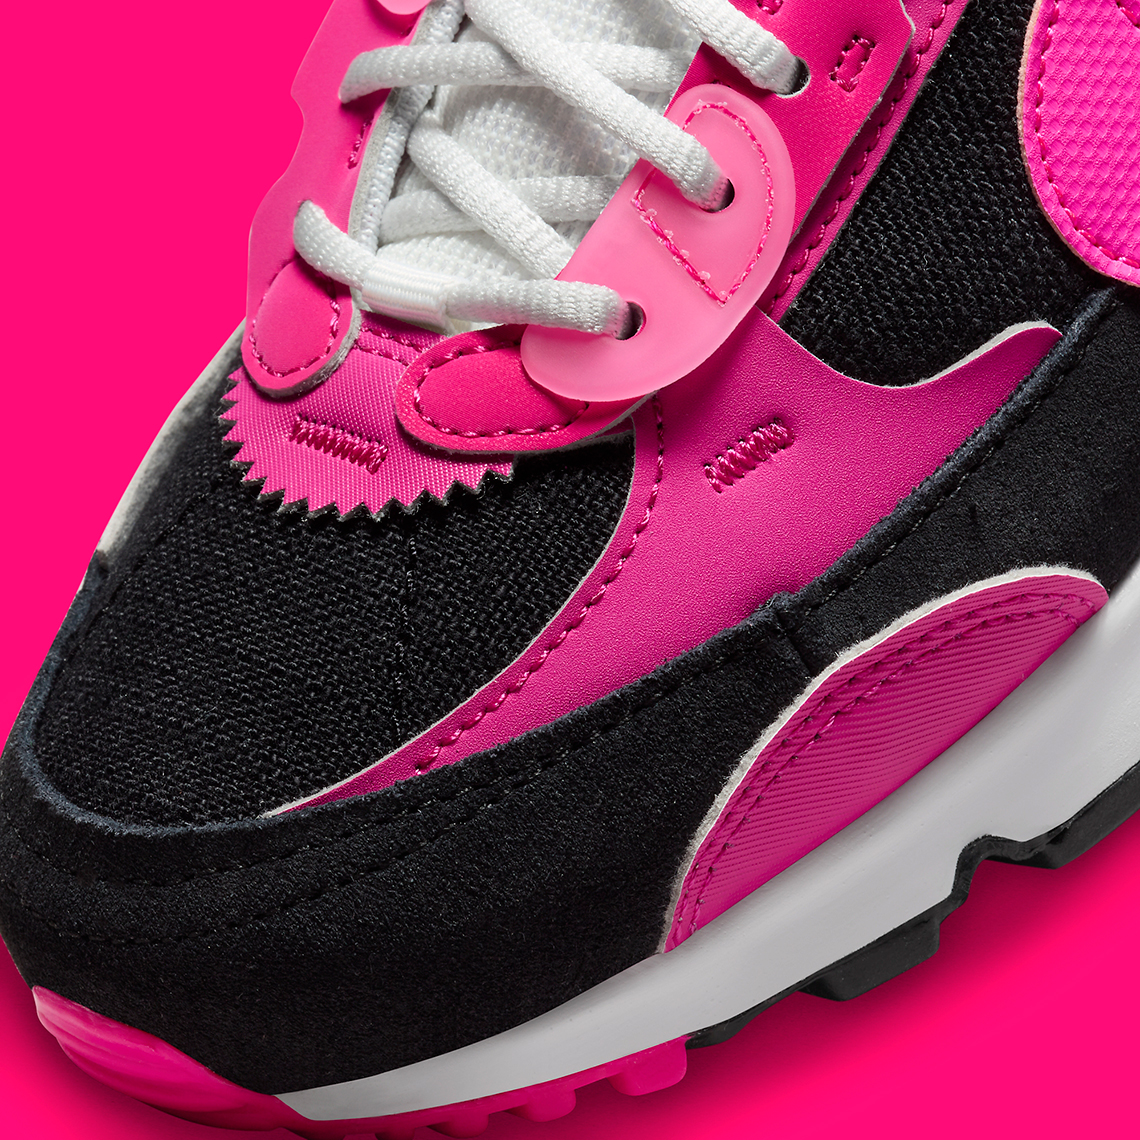 Nike nike free run girls patterns for kids printable Futura Black Hot Pink Dv7190 101 4